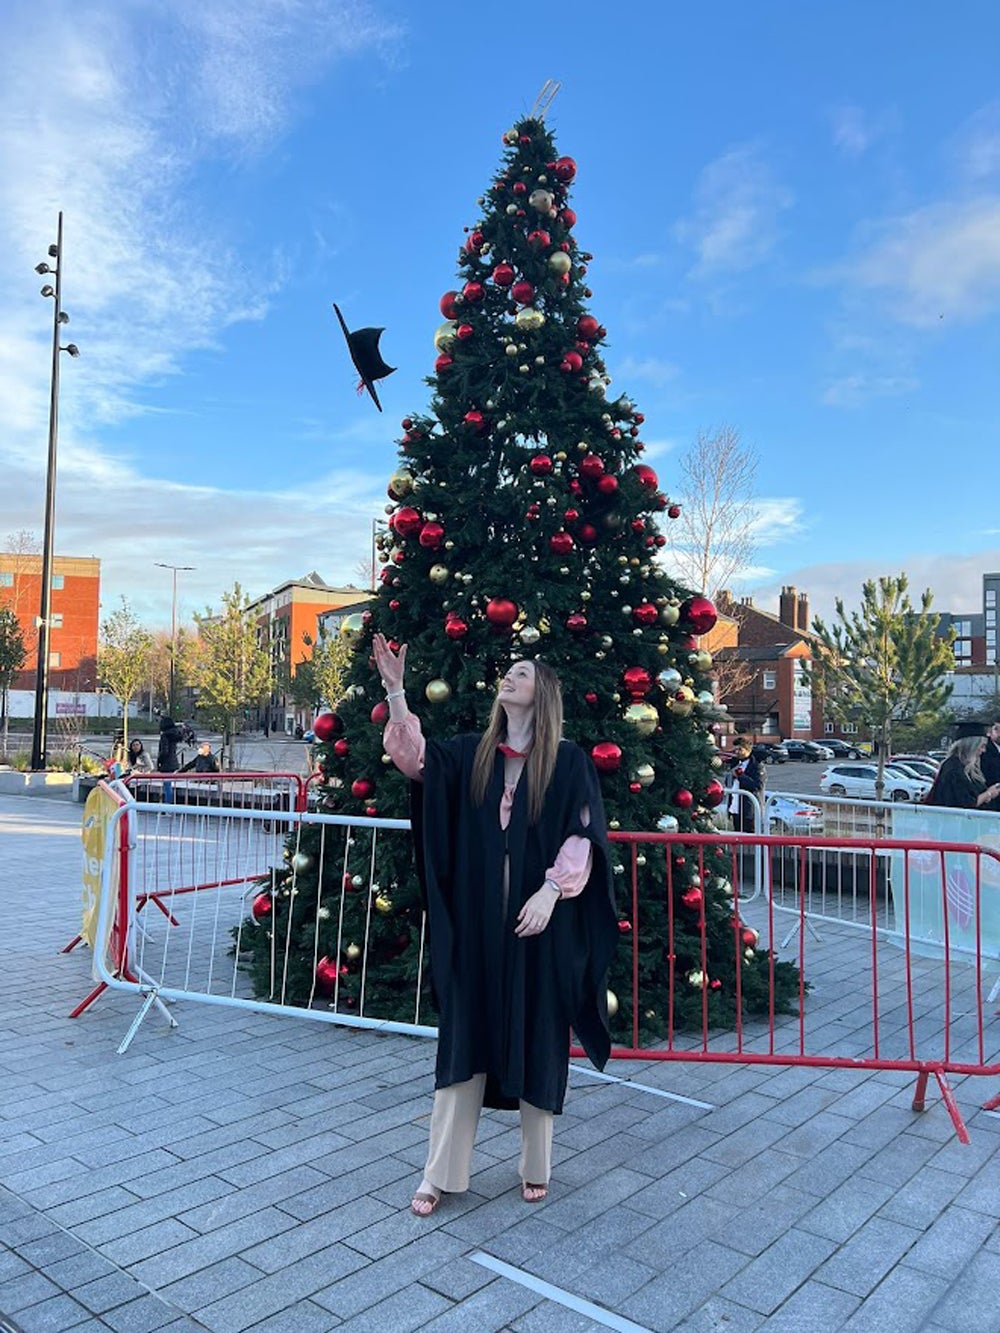 Laura en su graduación, en diciembre de 2021